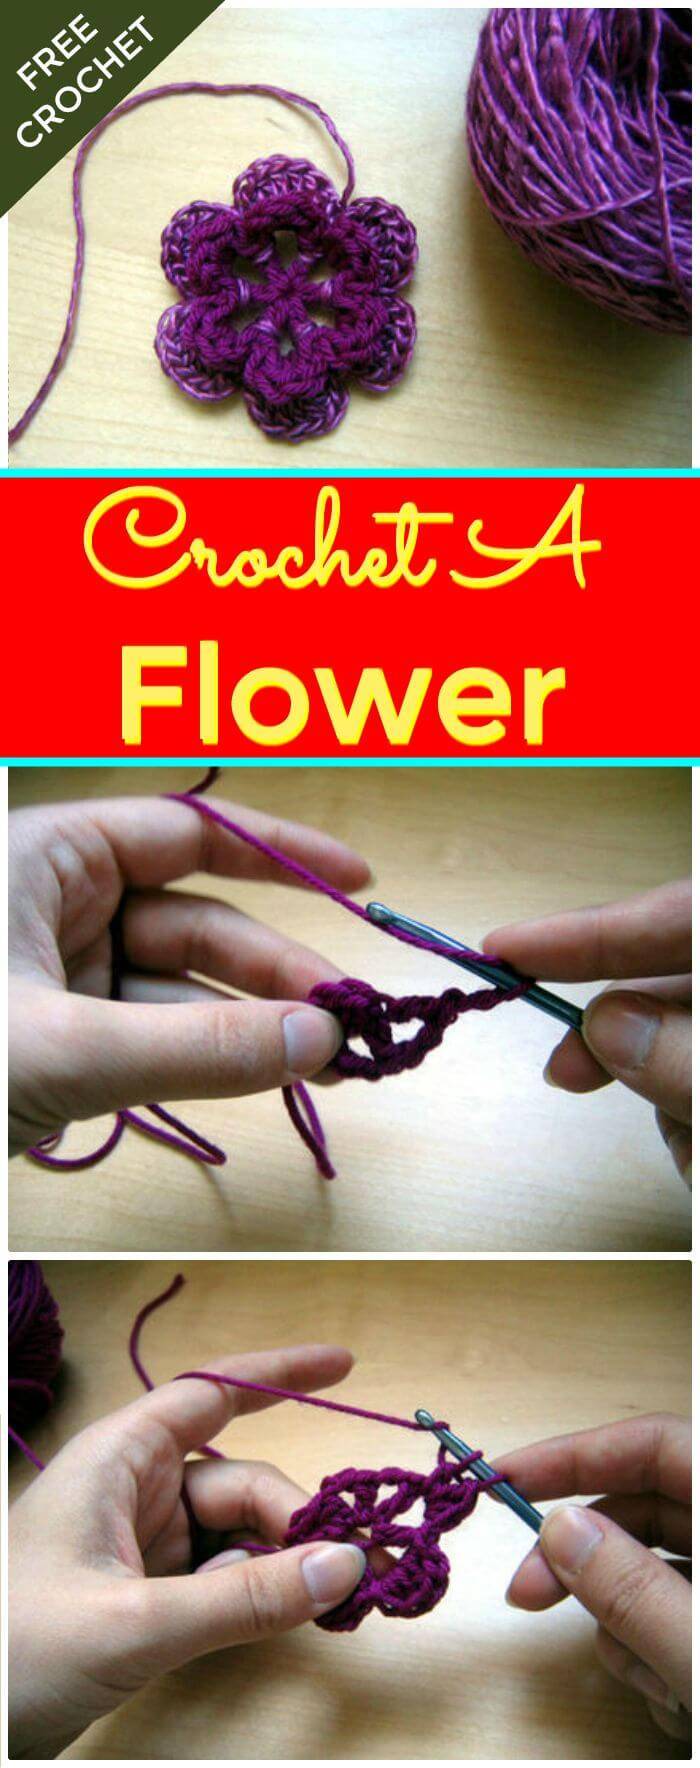 DIY Crochet A Flower-Free Crochet Pattern, How to crochet flowers projects! Free crohet flower Patterns!